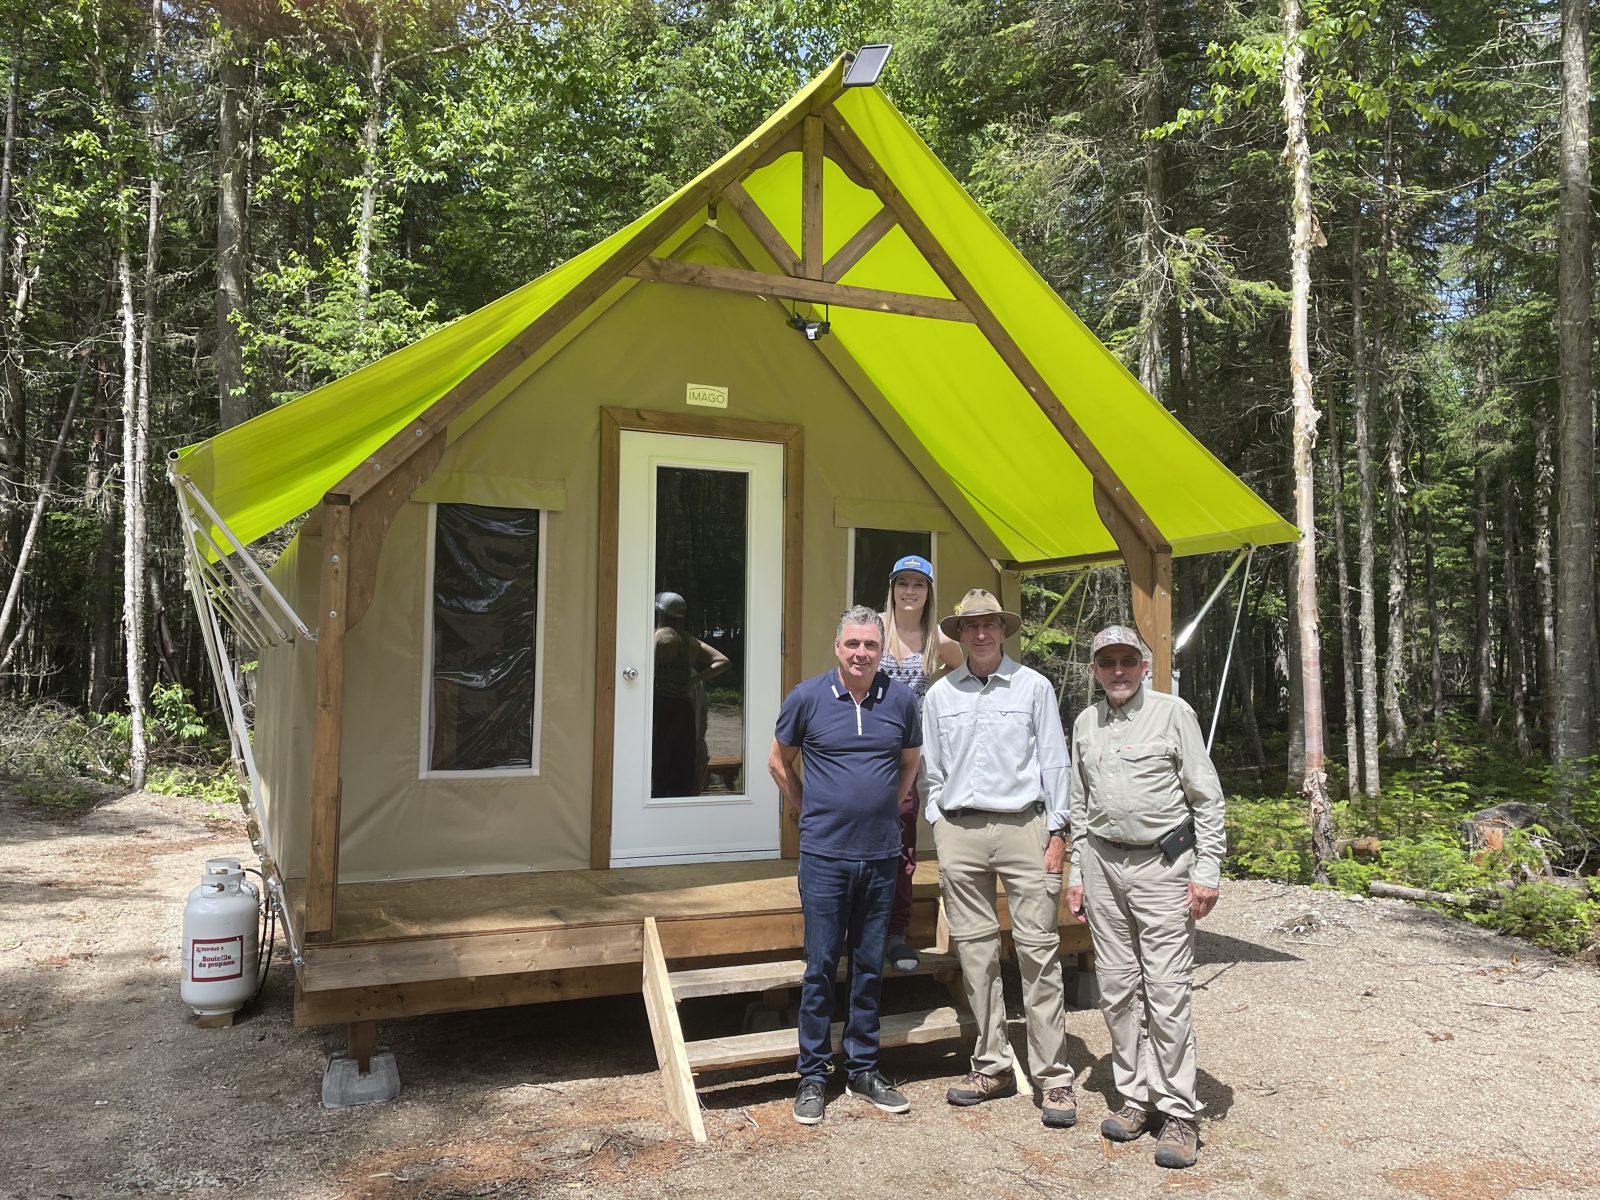 Deux nouveaux prêts à camper inaugurés à la Zec de la Rivière-Blanche